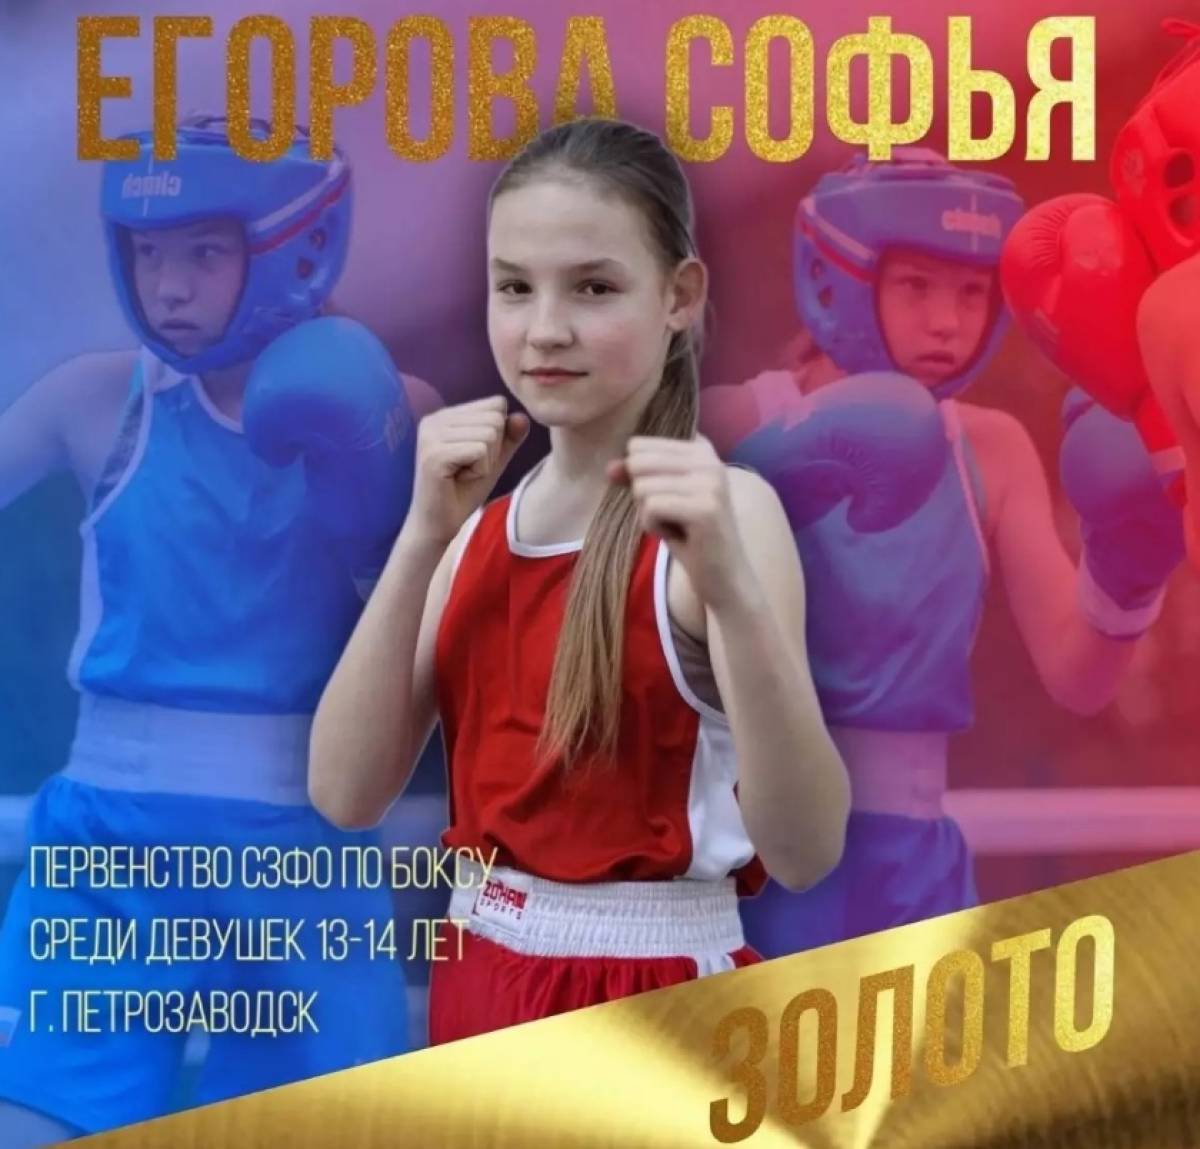 По словам тренеров спортсменки Мурада Амирбекова и Евгения Никитенкова, Софья отличается упорством и твёрдостью характера.